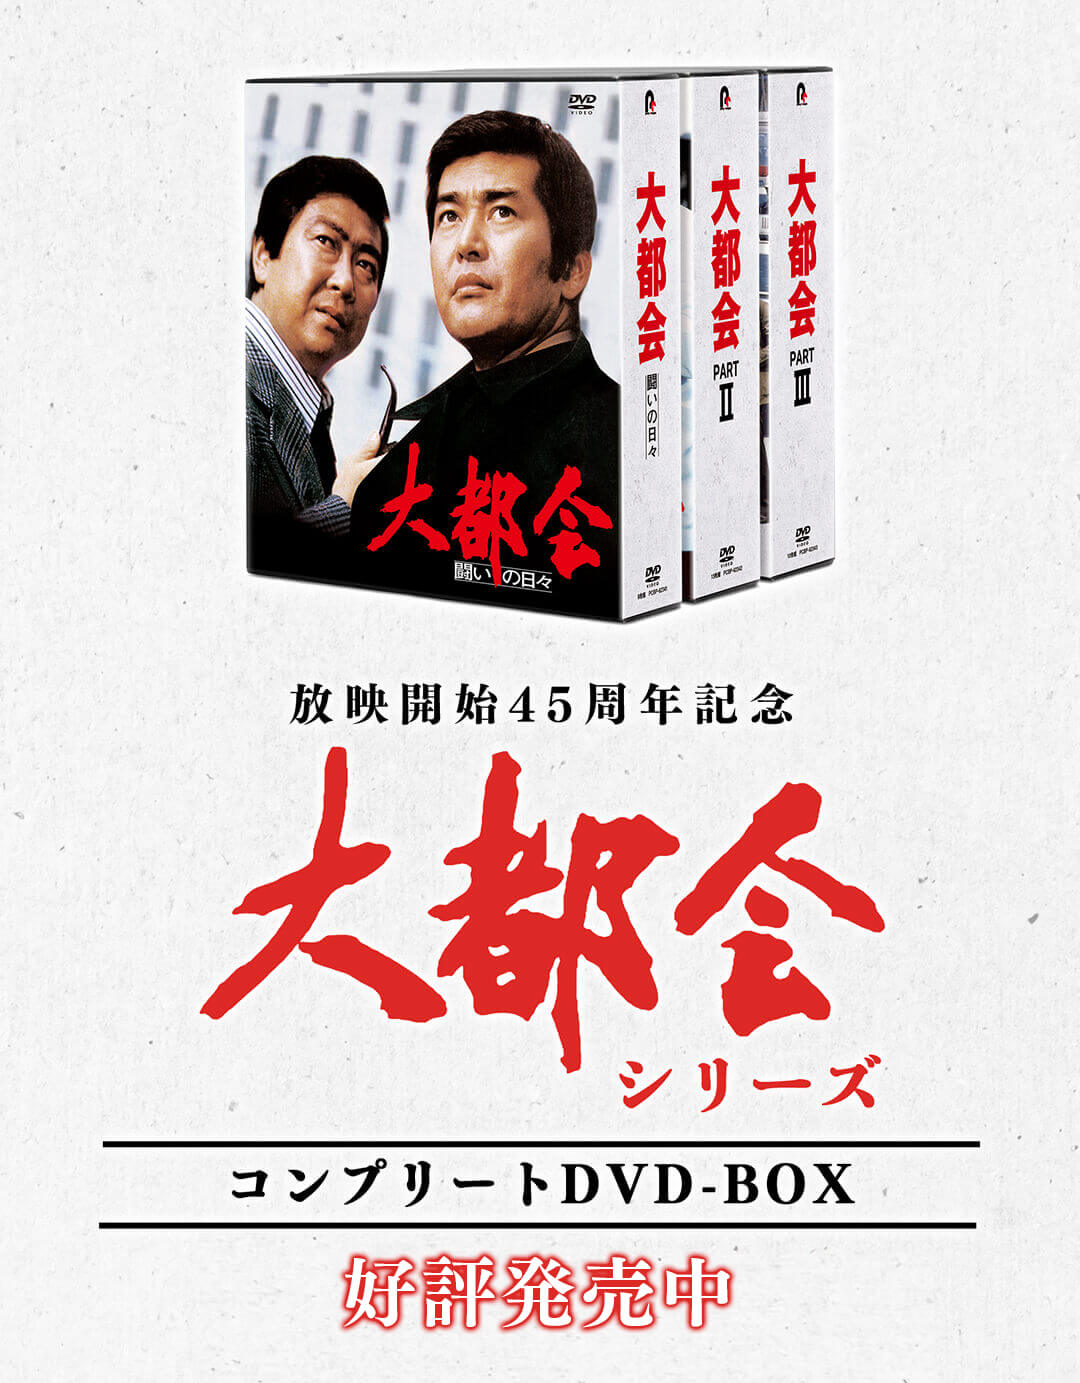 【剣客商売】第1～5シリーズ DVD-BOX スペシャル付き・ポスター付き